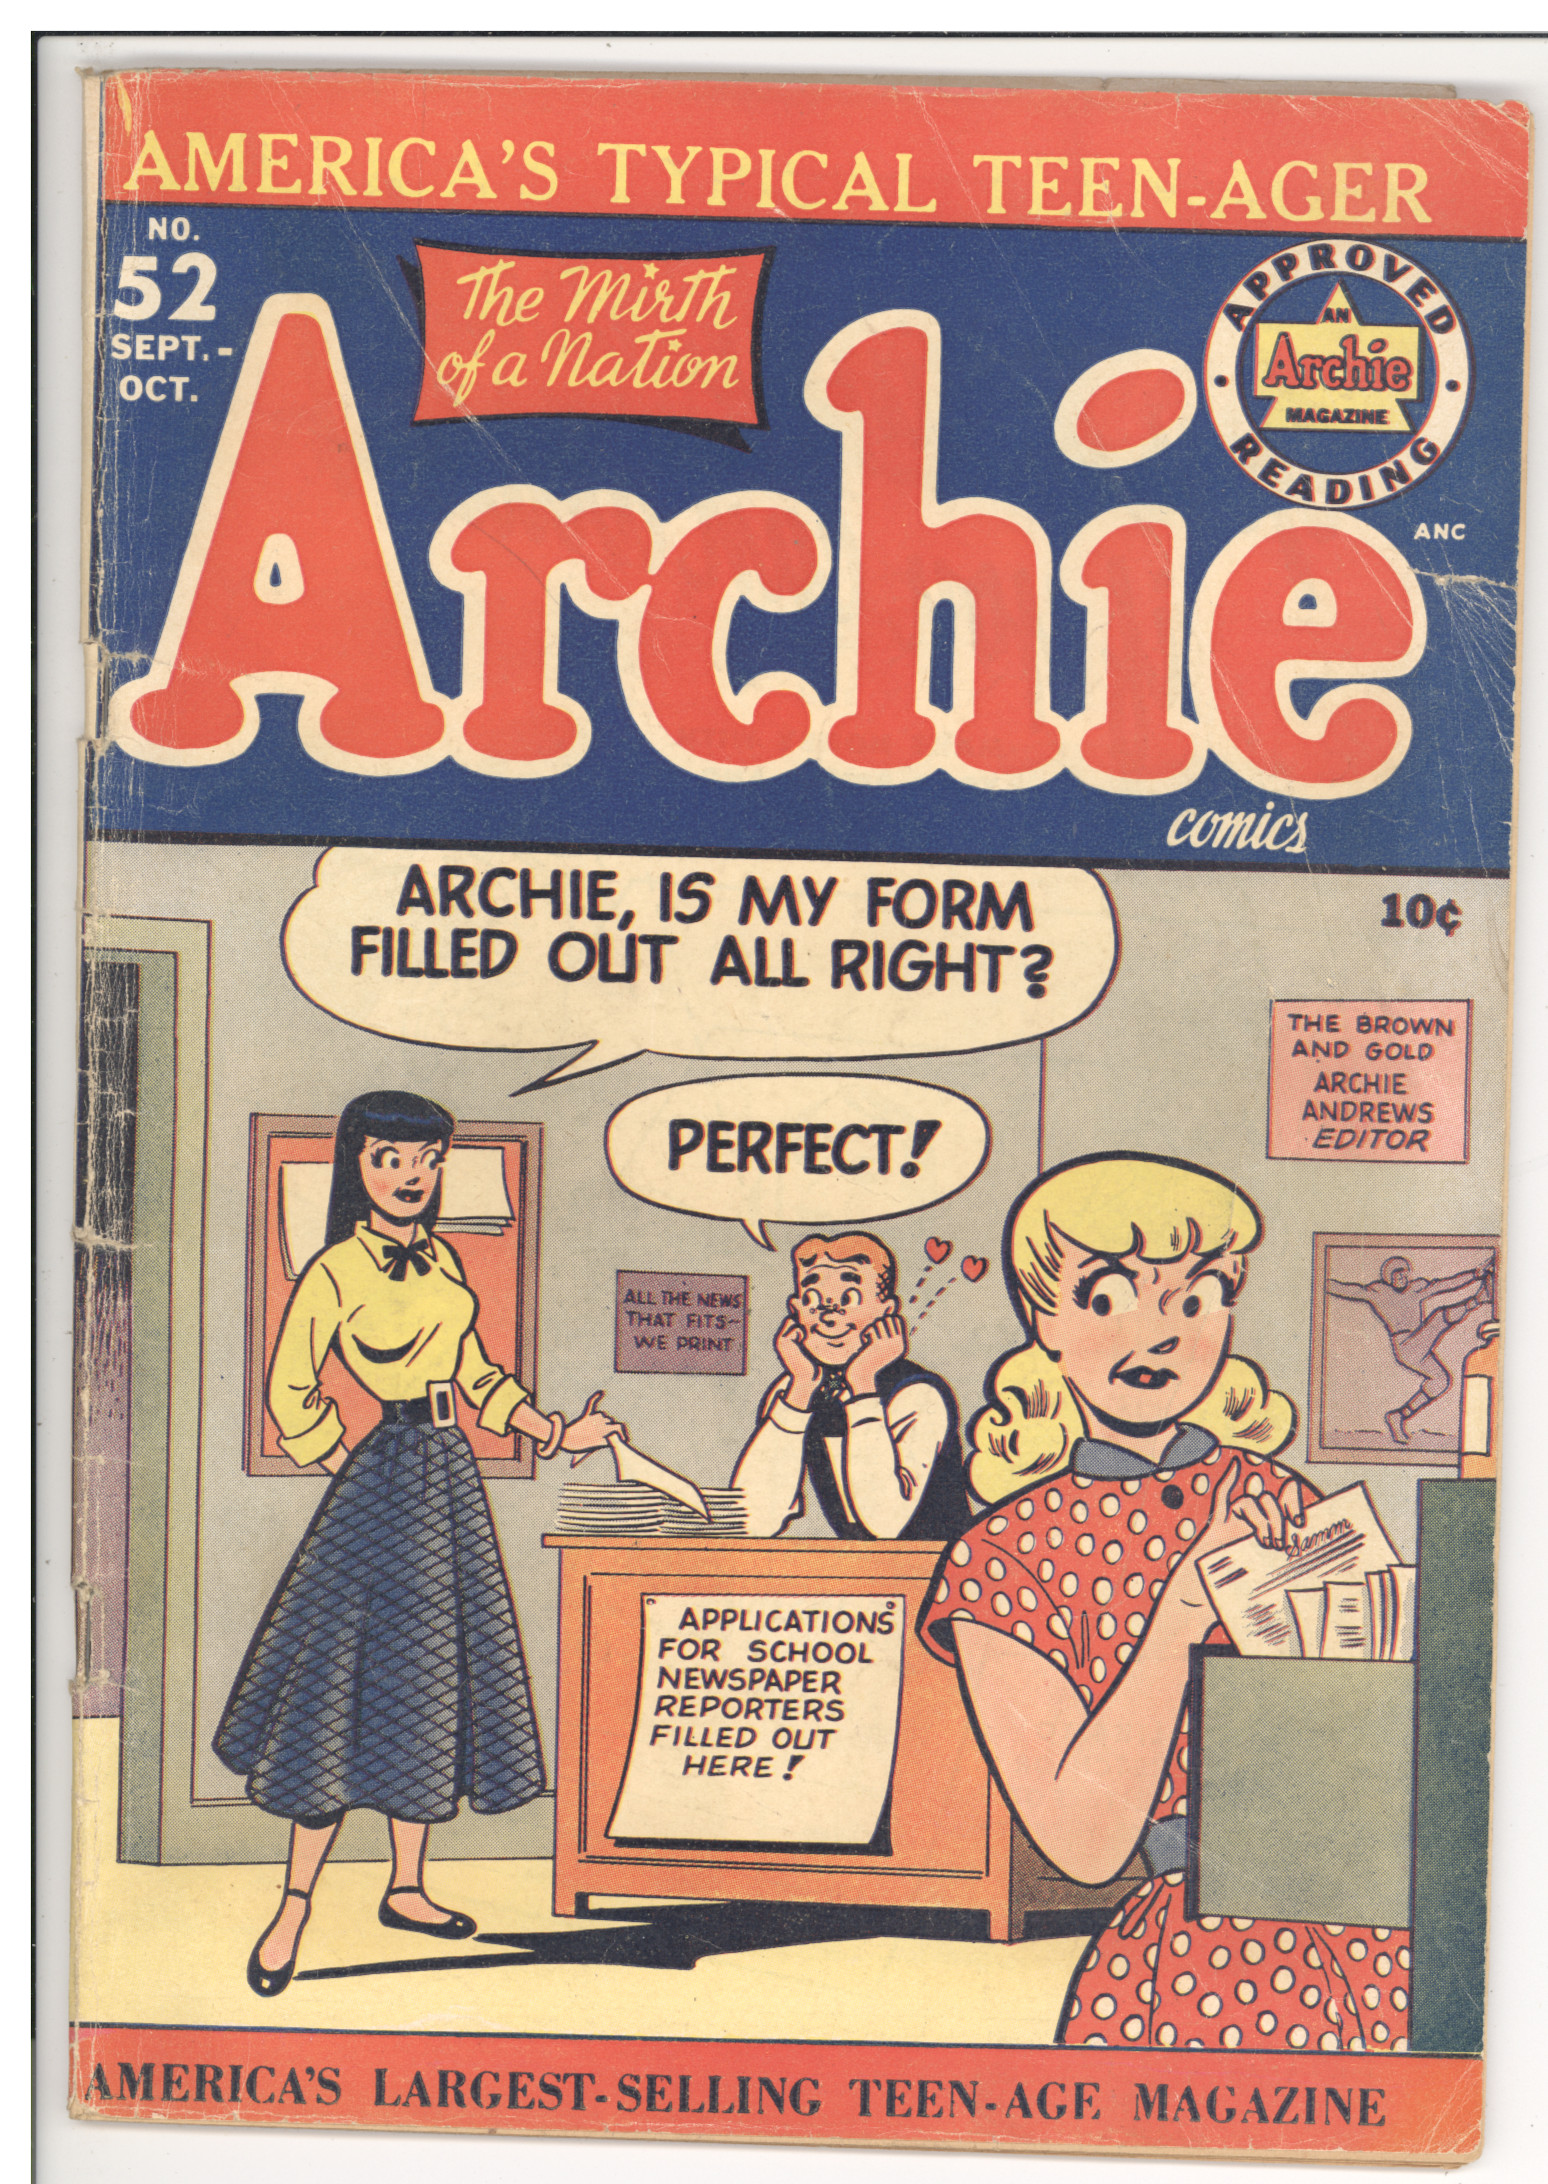 Archie Comics #52 front